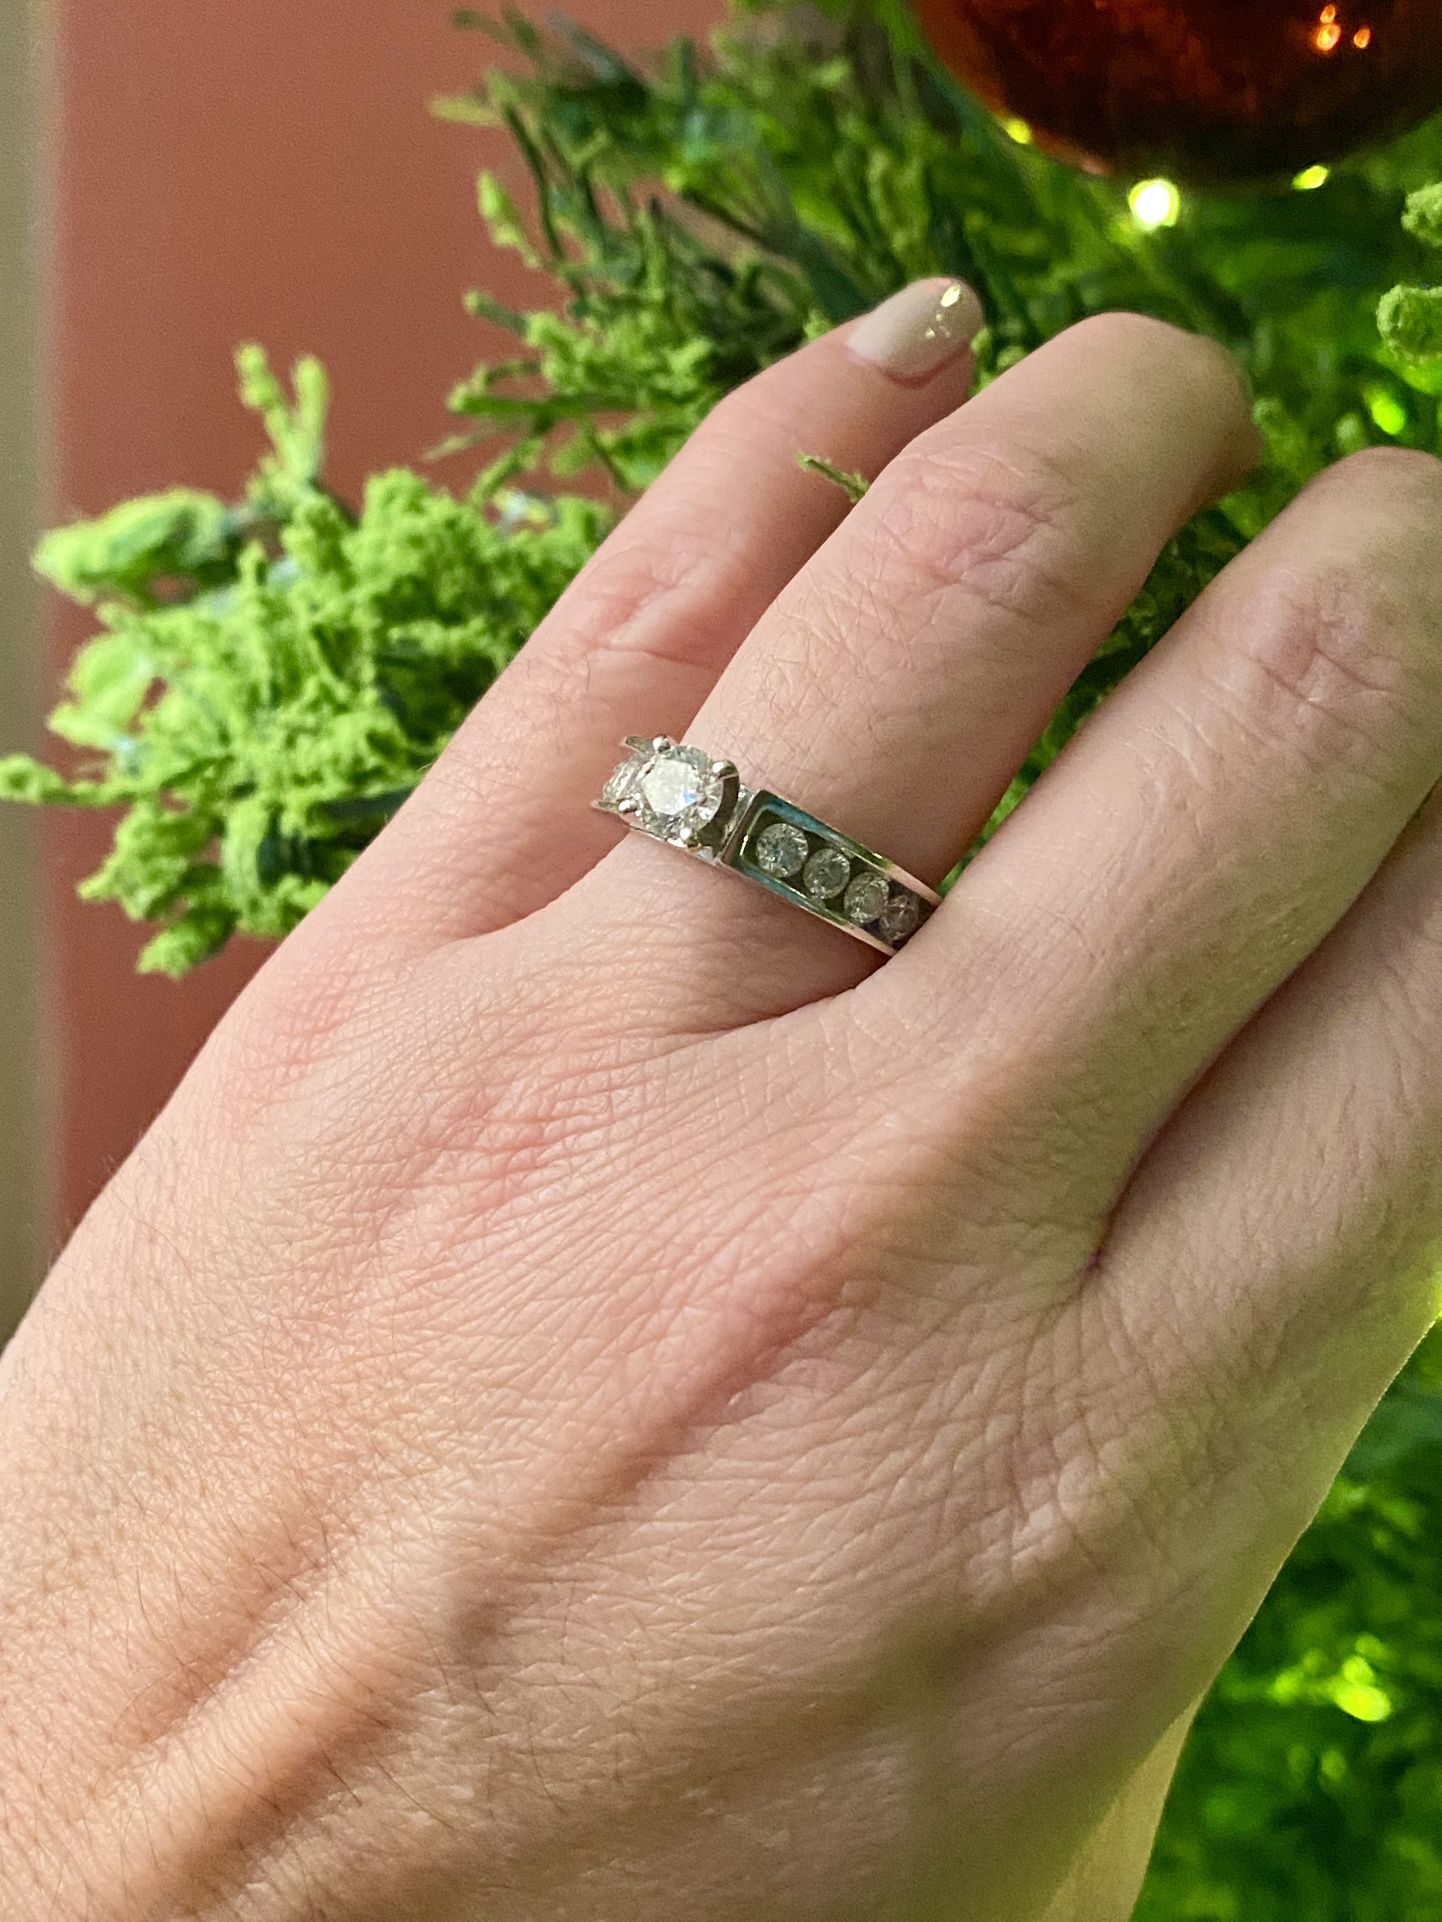 Diamond Engagement Ring “2 Carat” 14k White Gold